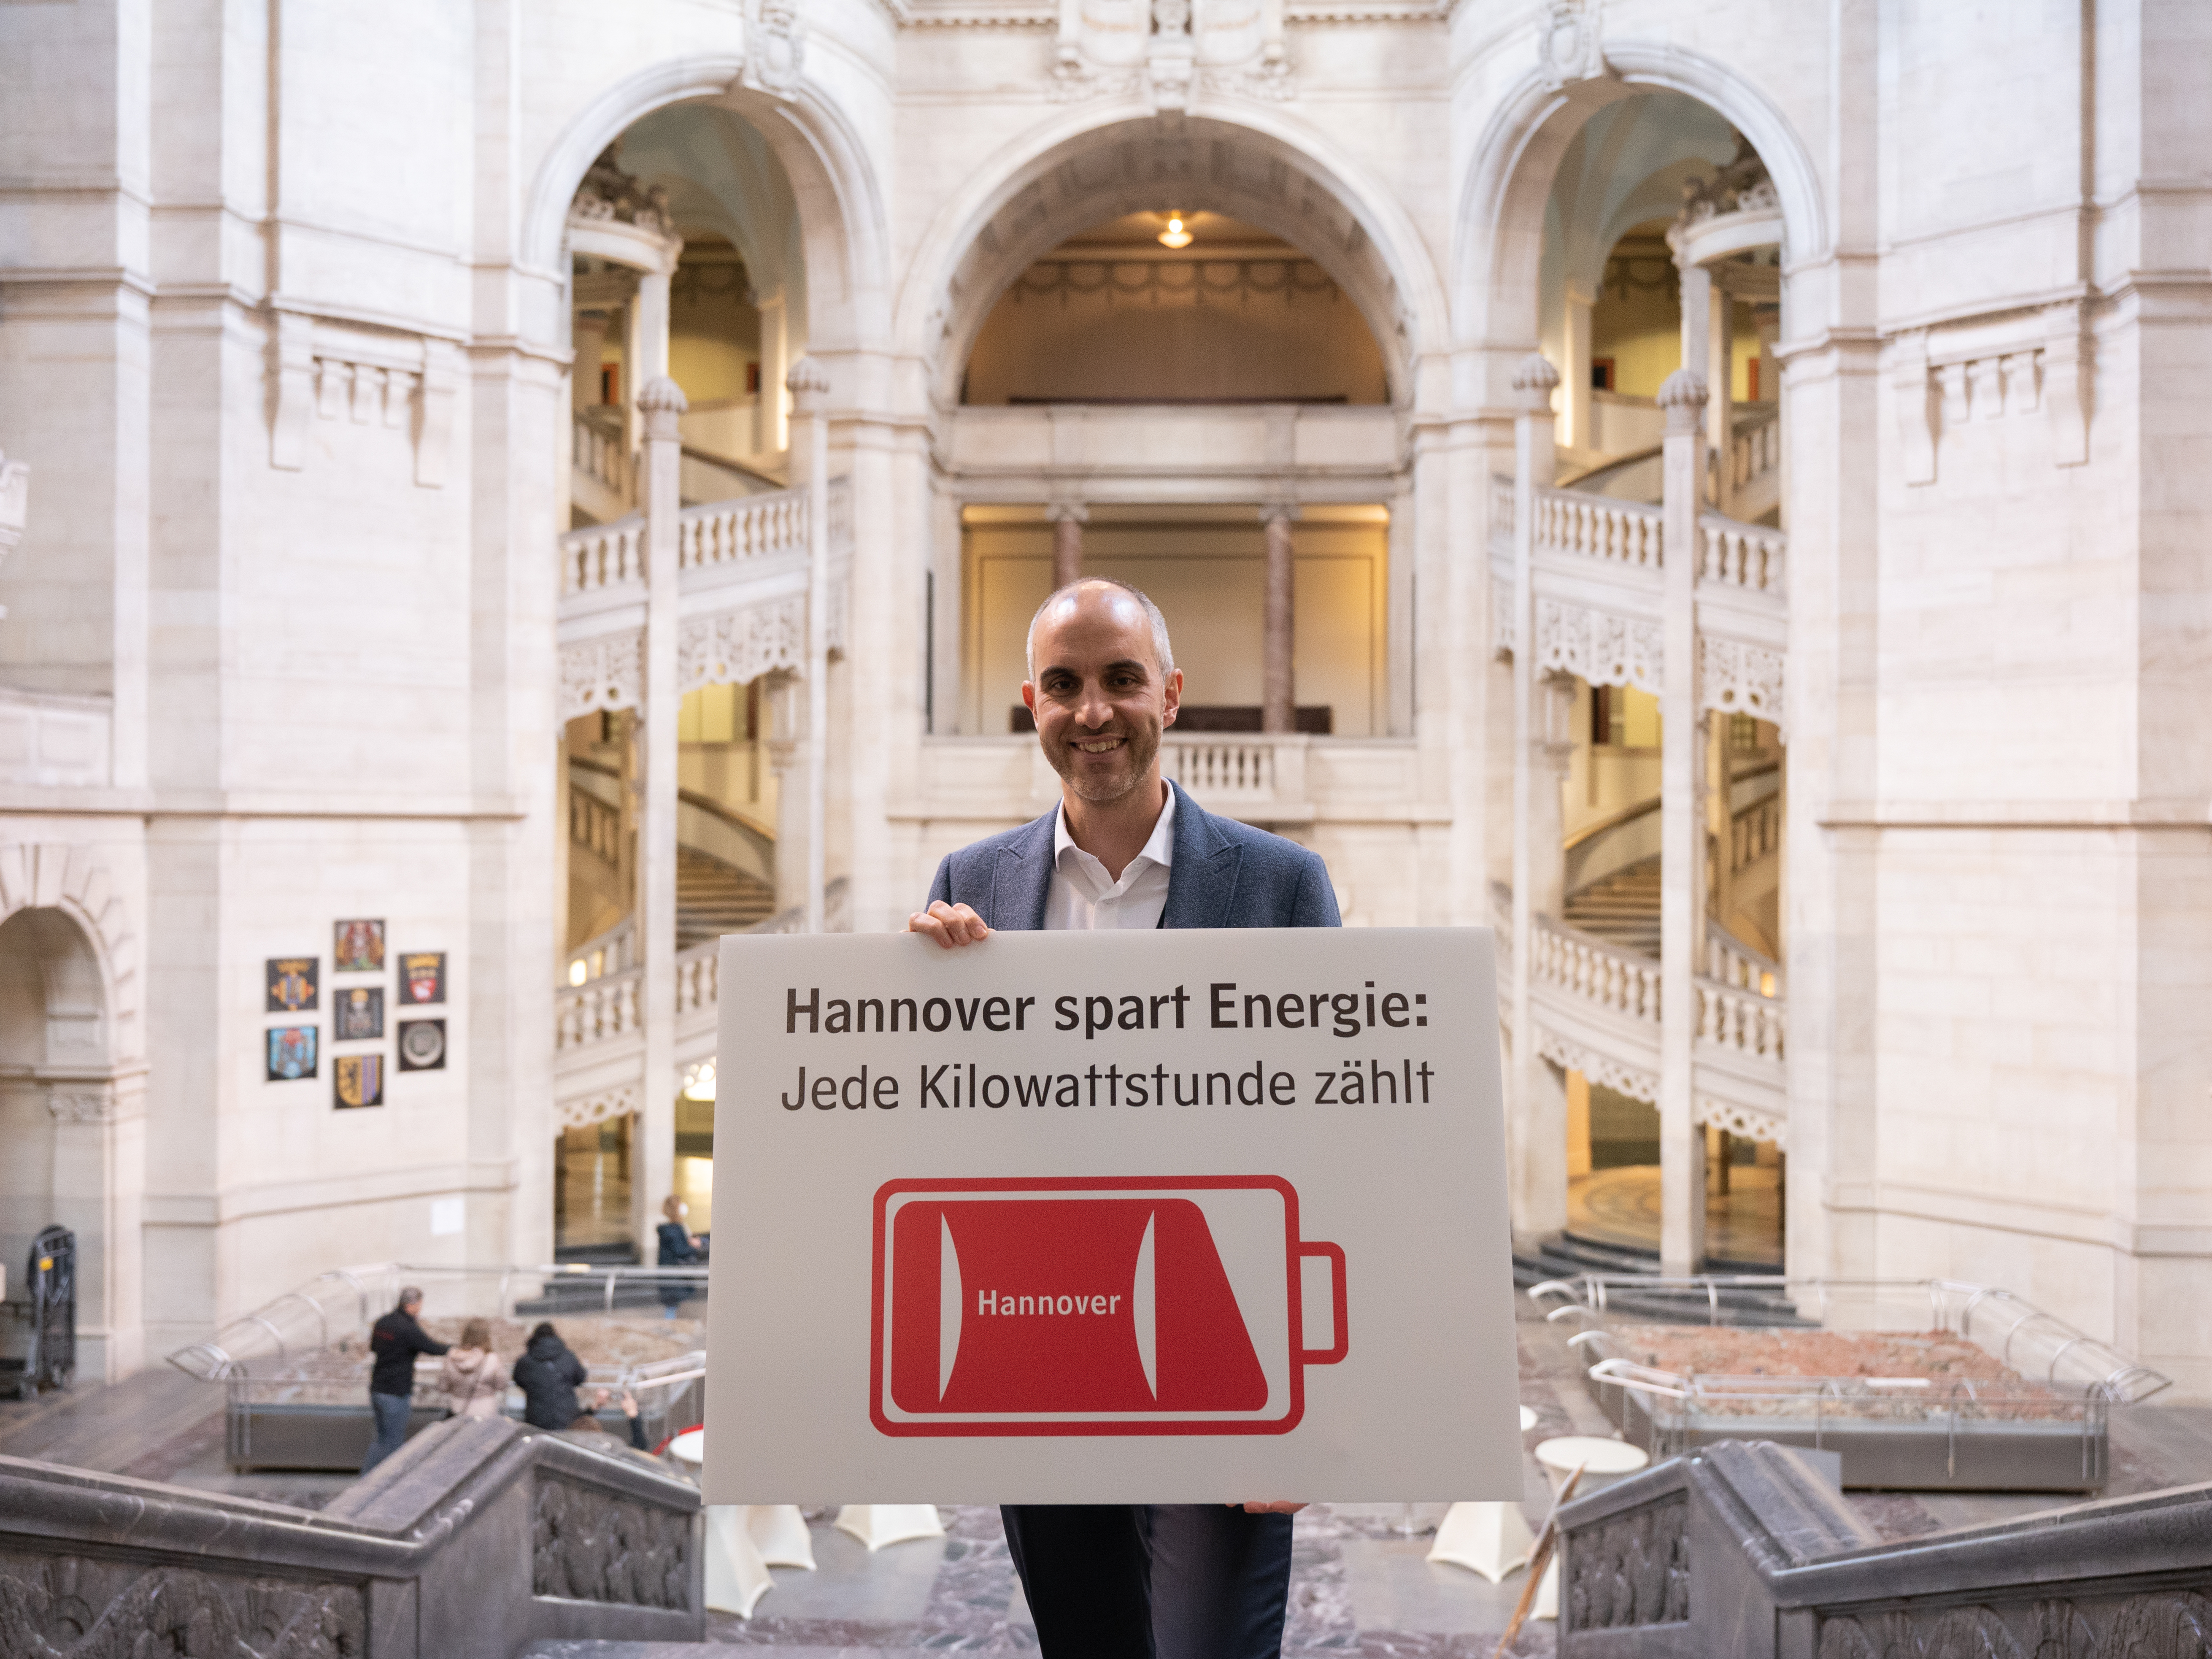 Ein Mann steht in der Rathaushalle und hält ein weiß-rotes Schild mit einem Batterielogo und der Aufschrift "Hannover spart Energie: Jede Kilowattstunde zählt".